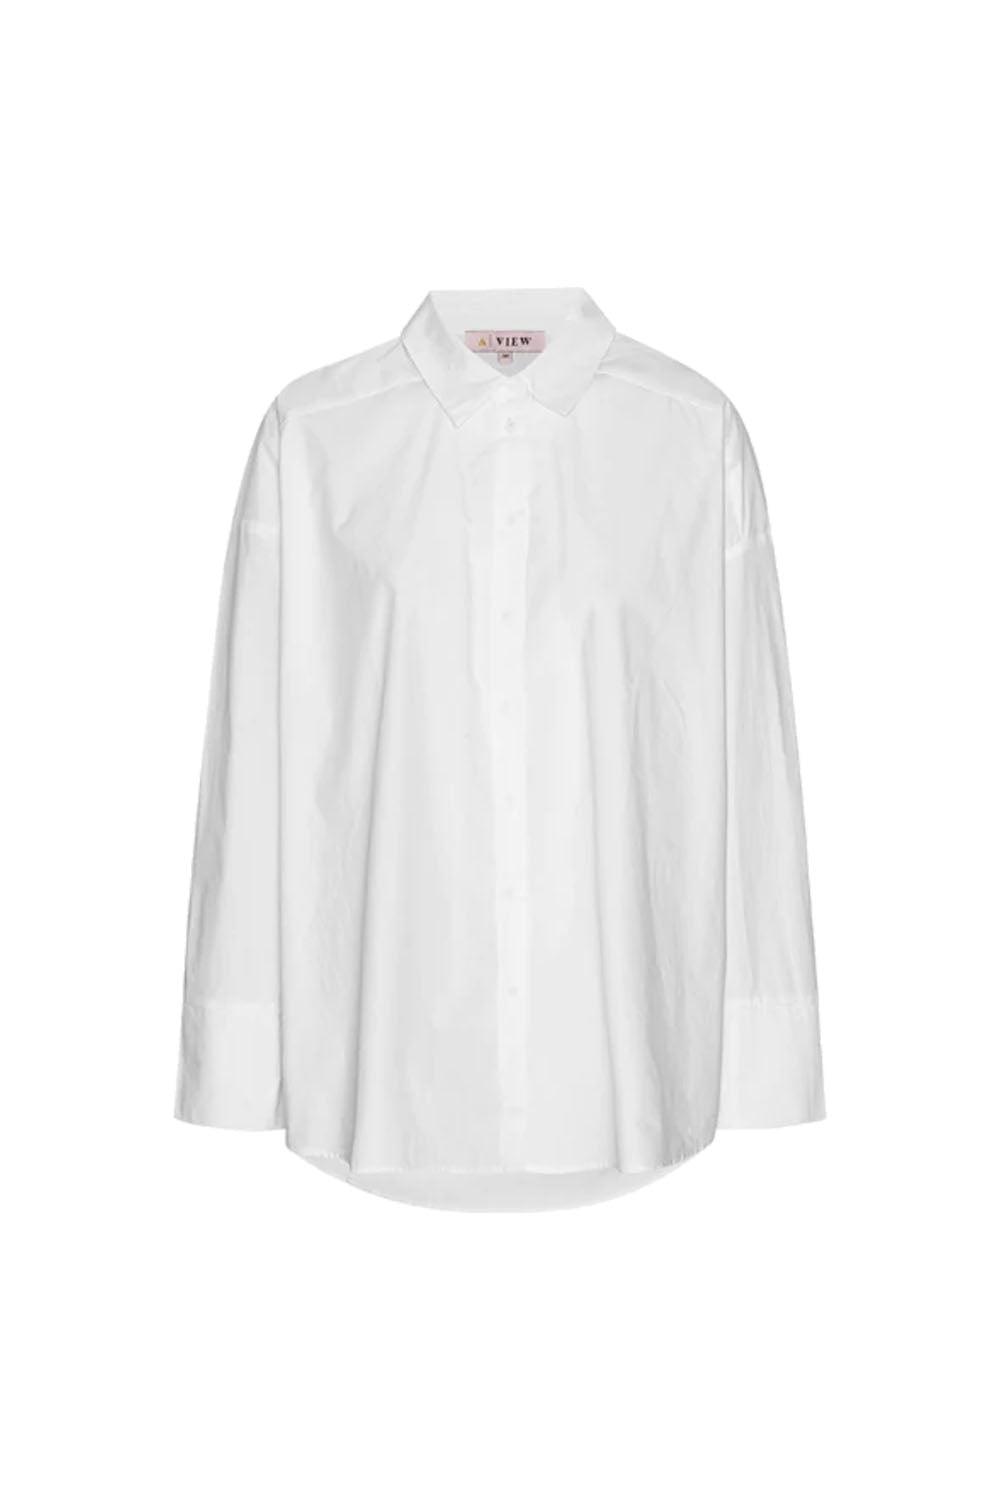 Magnolia shirt white